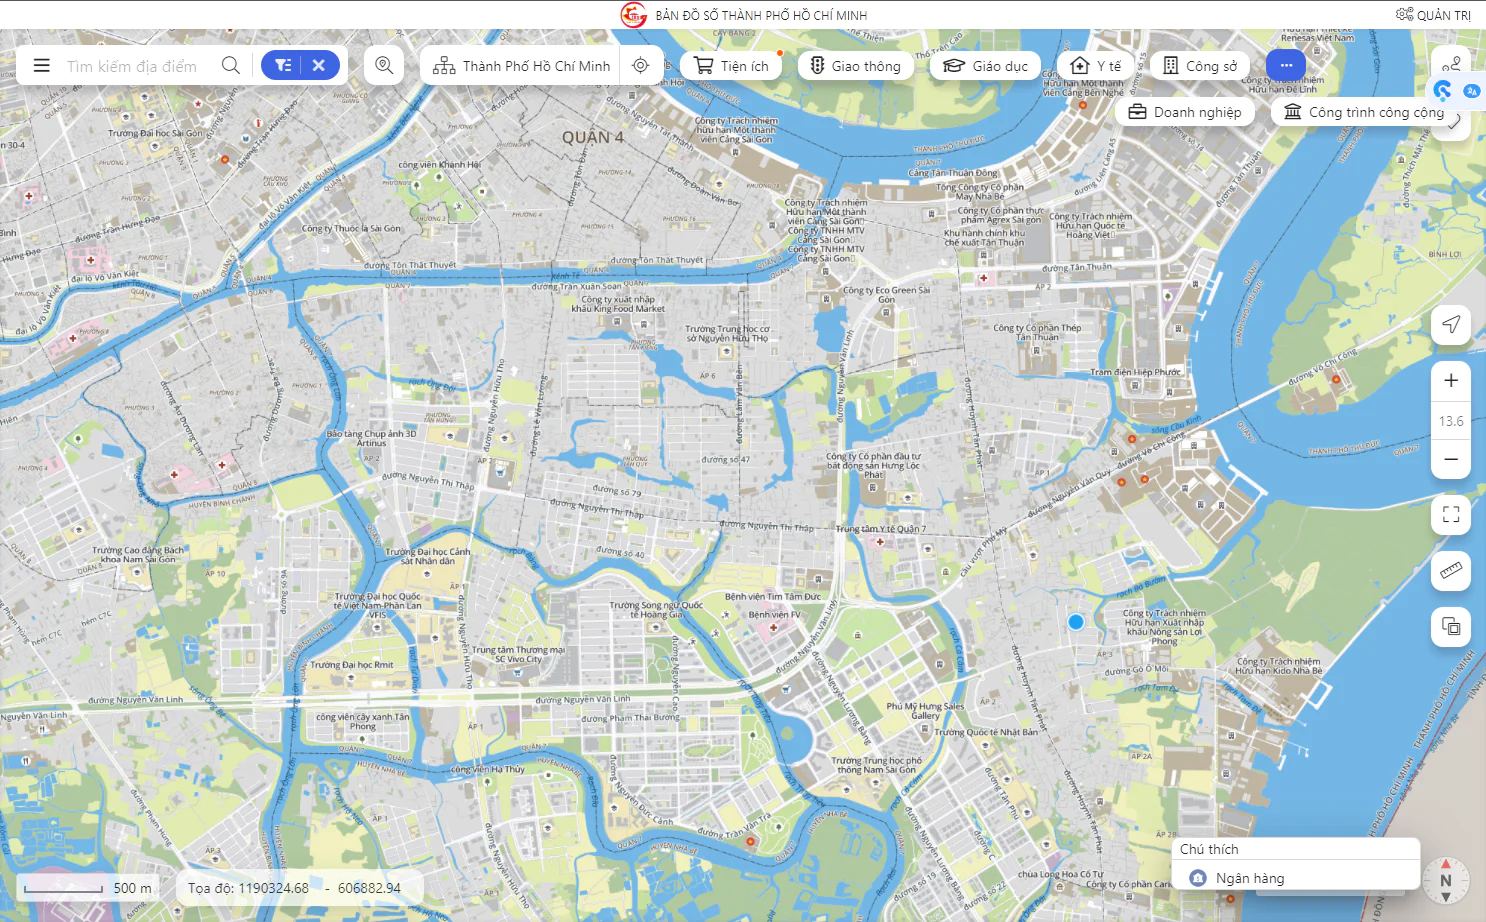 Bản đồ số dùng chung - tích hợp dữ liệu đa ngành thành phố Hồ Chí Minh